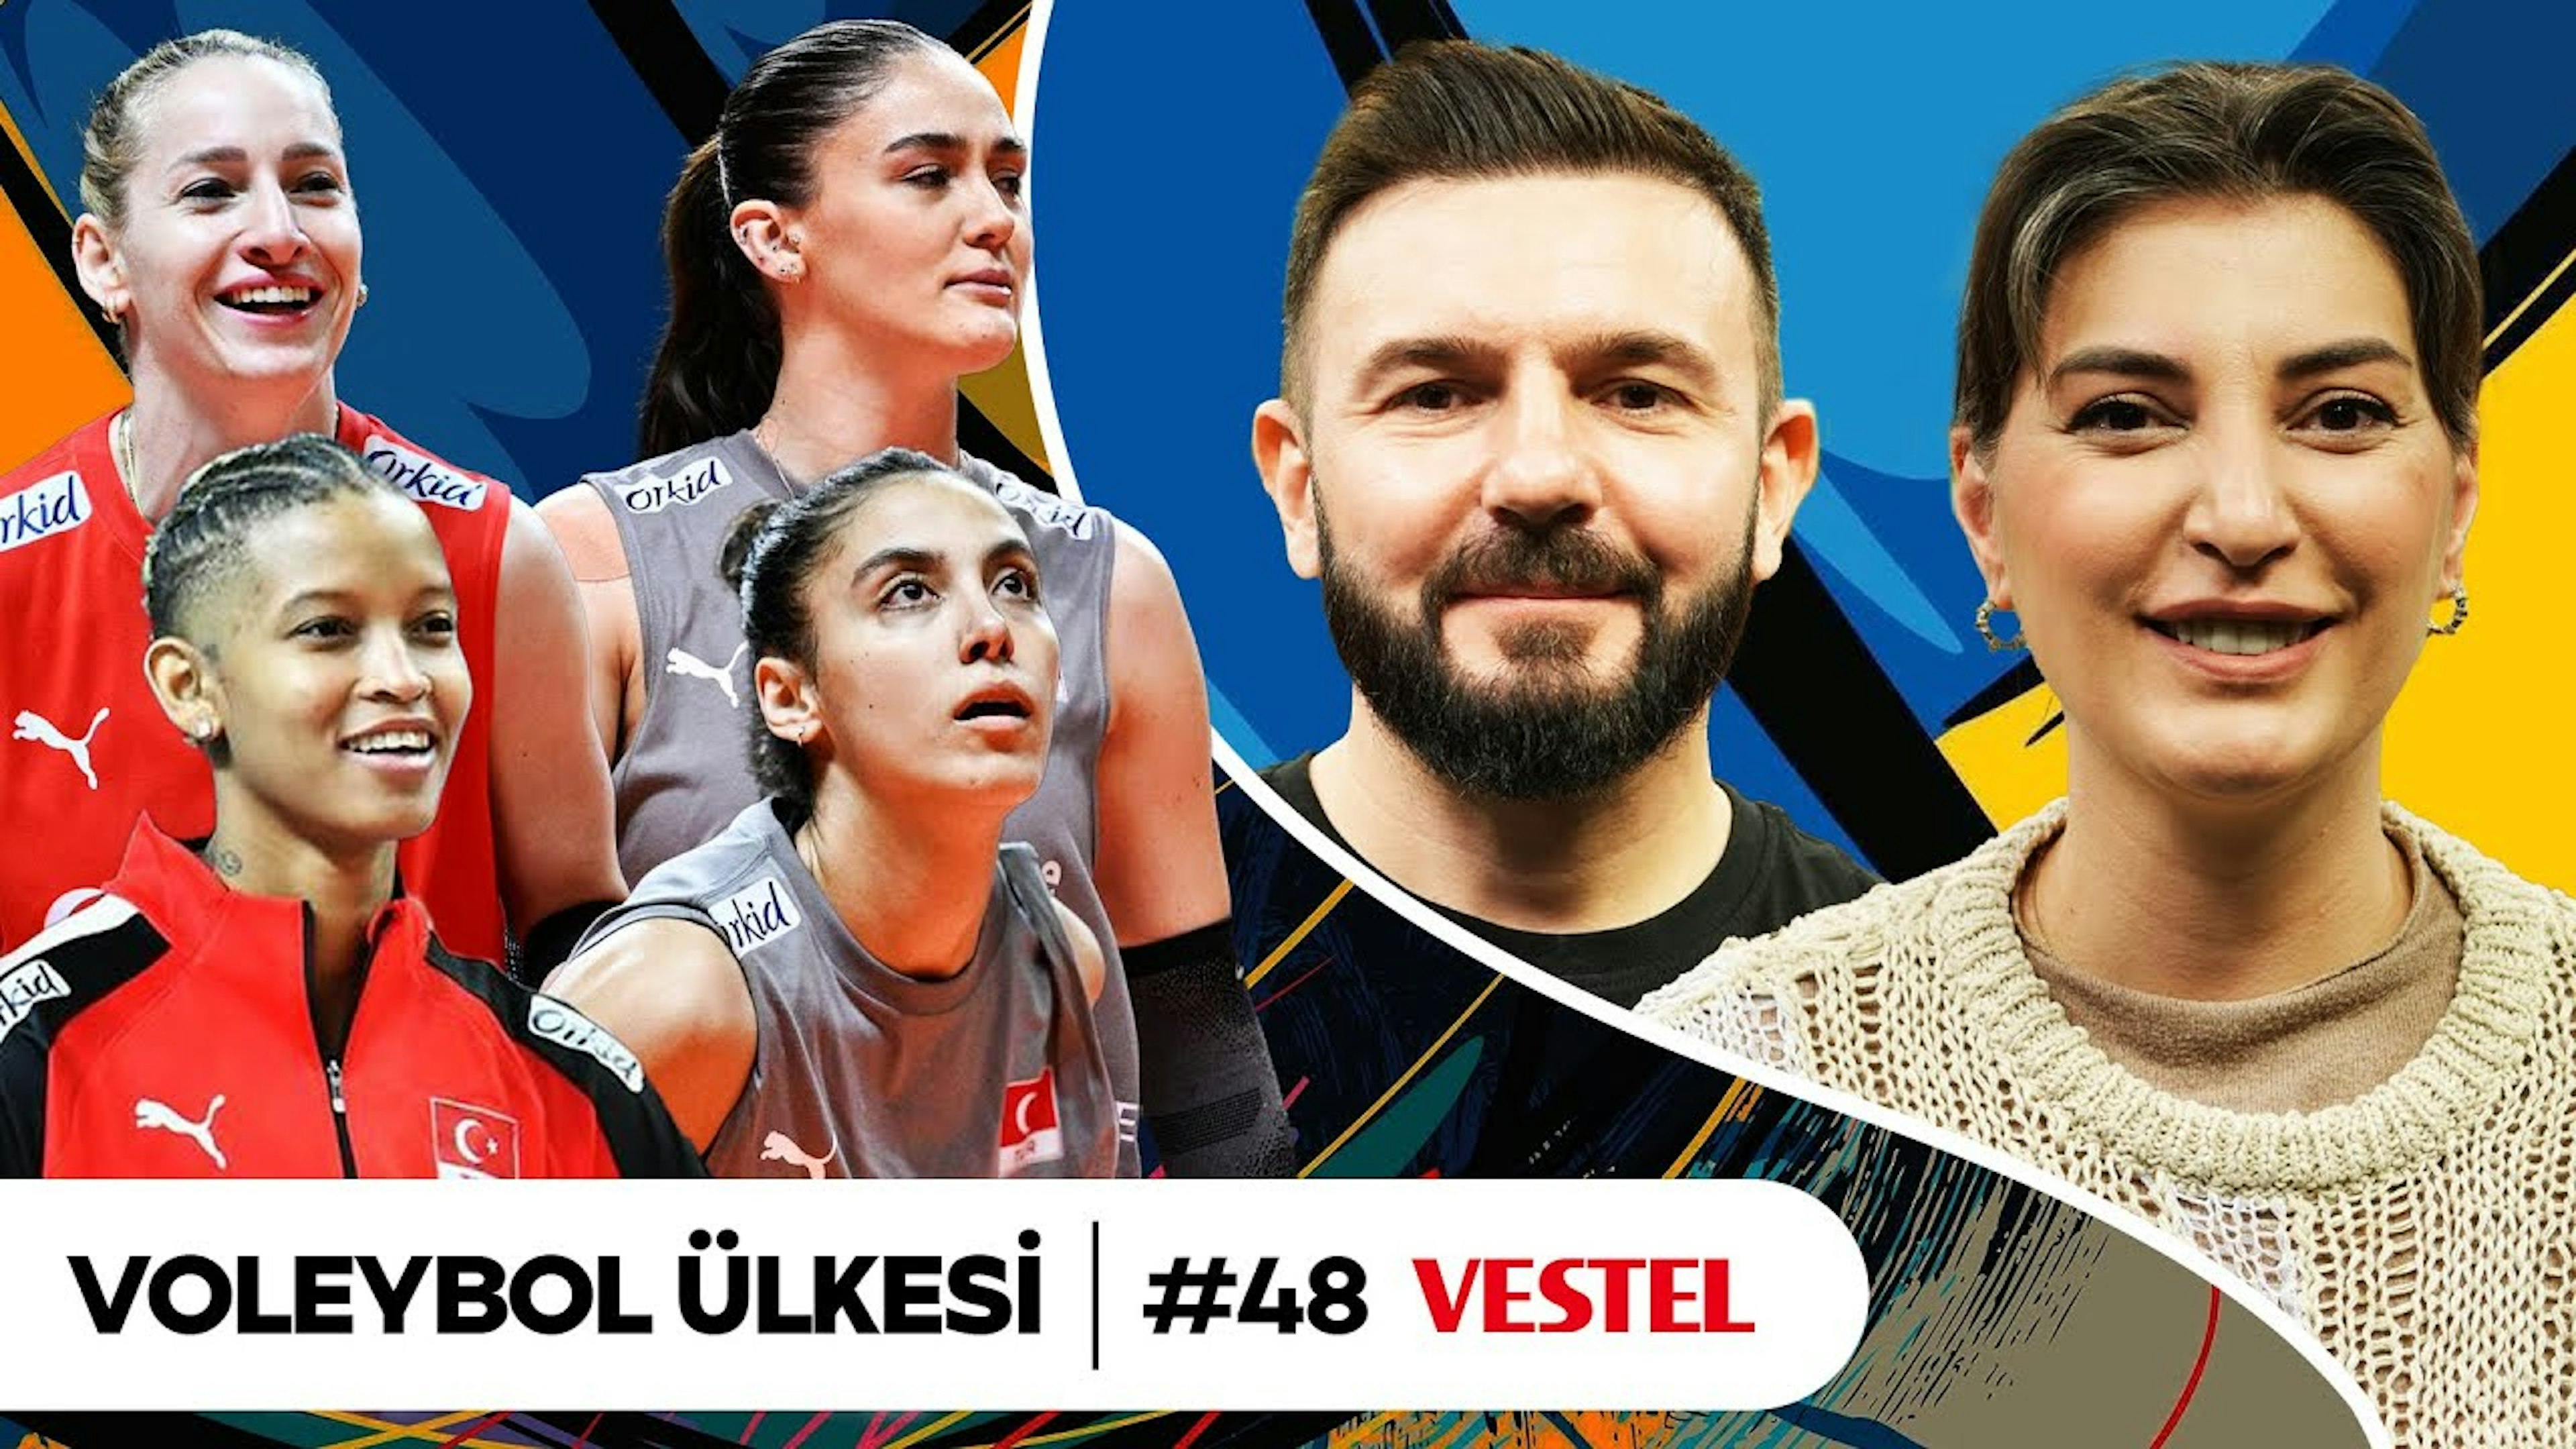 Soru & Cevap, Santarelli'nin Tercihleri, VNL Fikstürü, Beşiktaş'ın Yapılanması | Voleybol Ülkesi #48